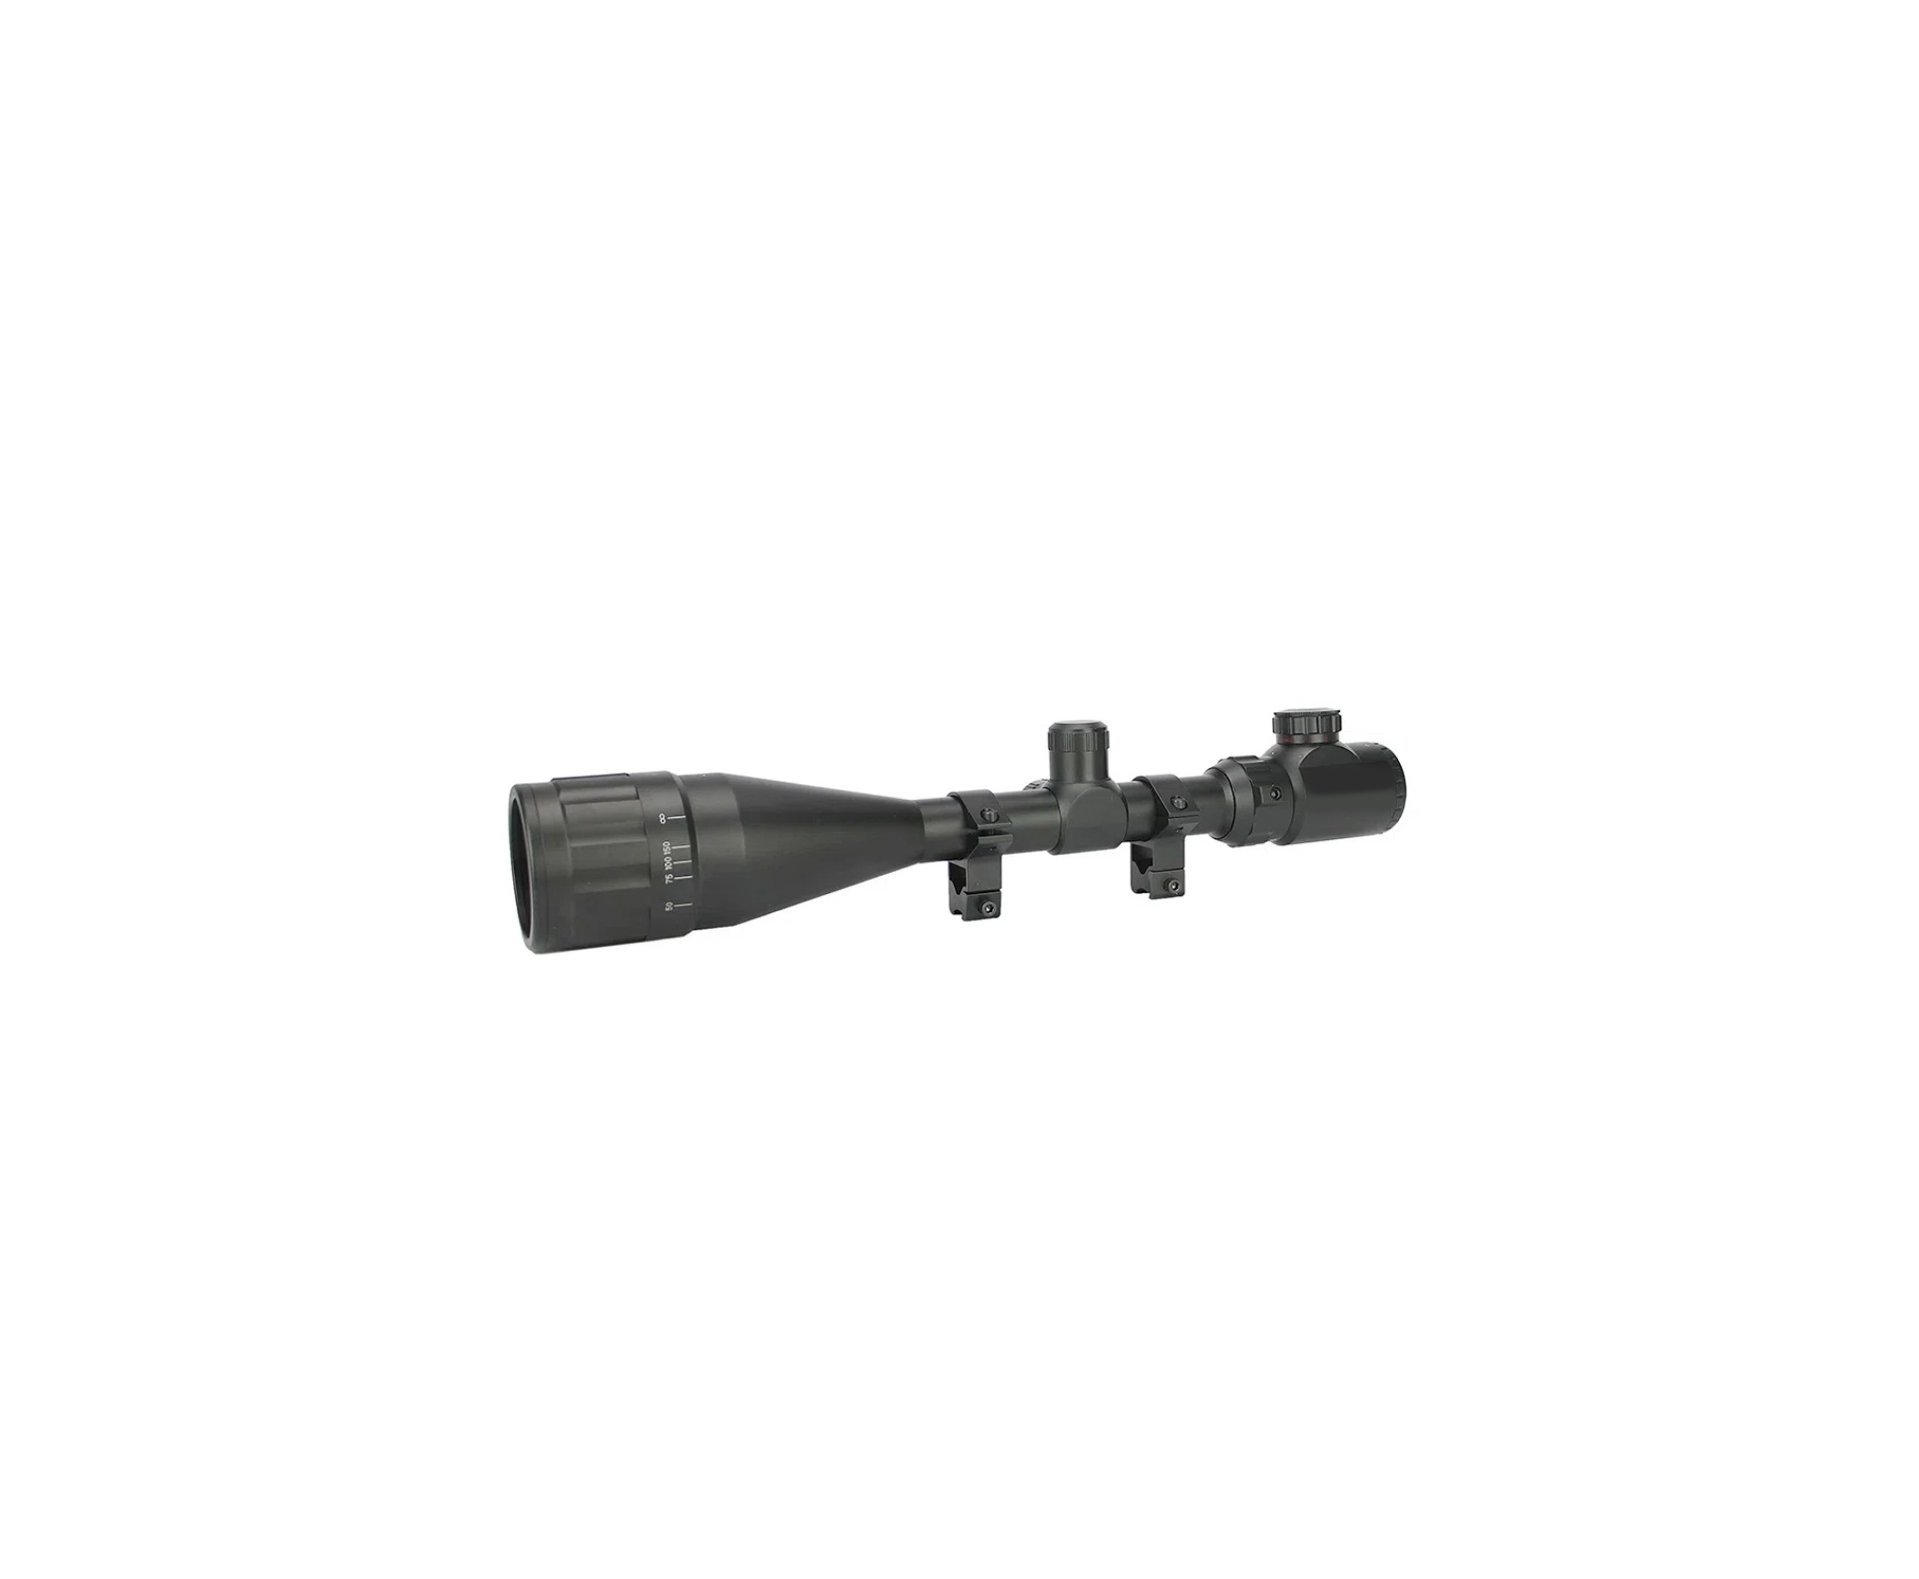 Carabina de Pressão PCP Artemis T-REX 4.5mm com Válvula Reguladora - Fixxar + Bomba + Luneta 4-16x50 + Mount 22mm + Case